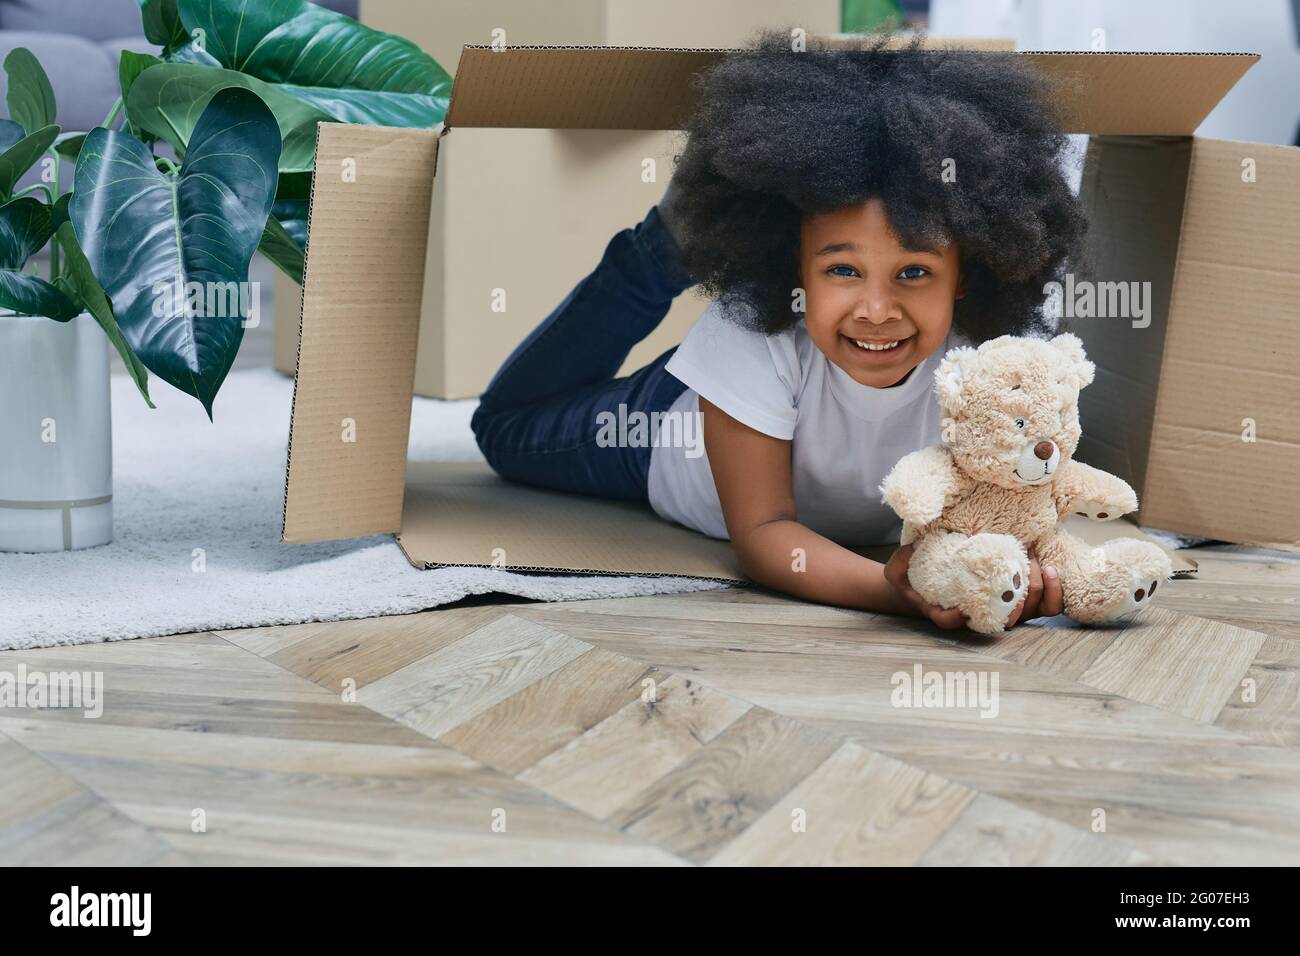 Bonne petite fille africaine américaine jouant avec des boîtes en carton et son ours en peluche, s'amusant tout en déplaçant la nouvelle maison Banque D'Images